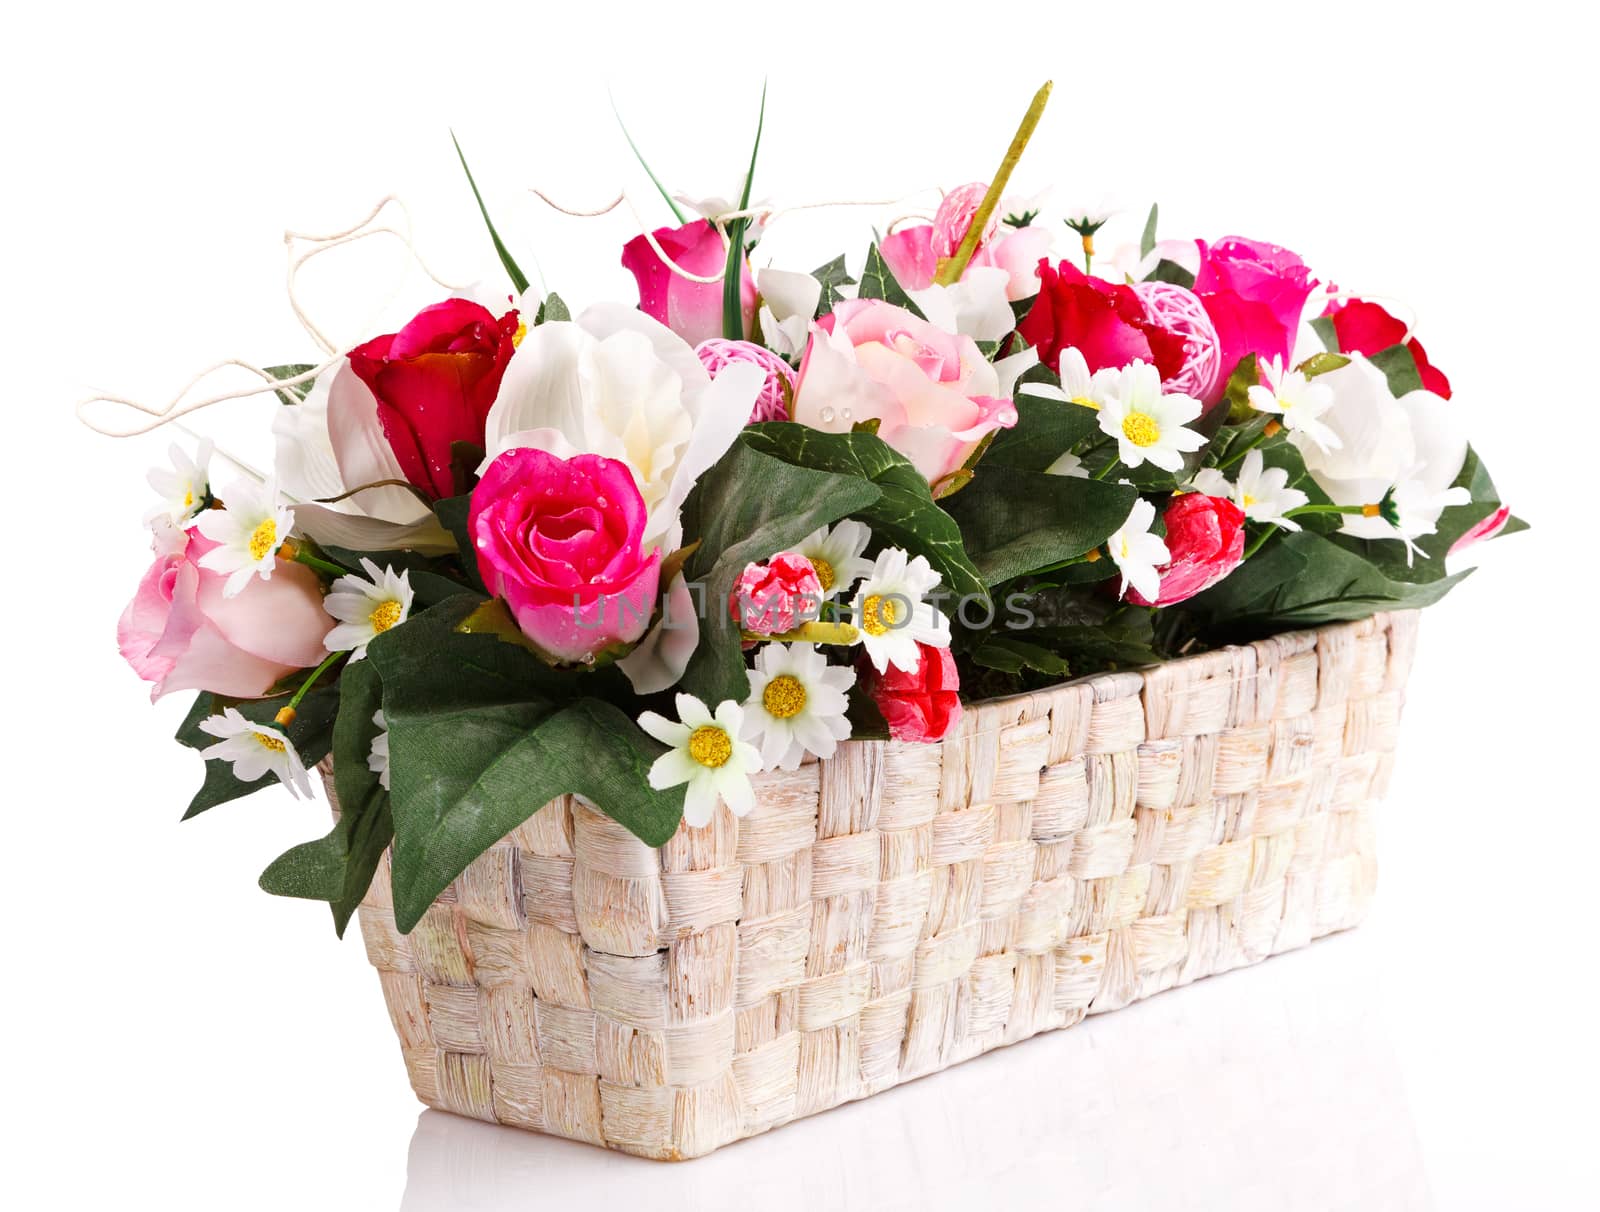 artifical floral arrangement by serkucher